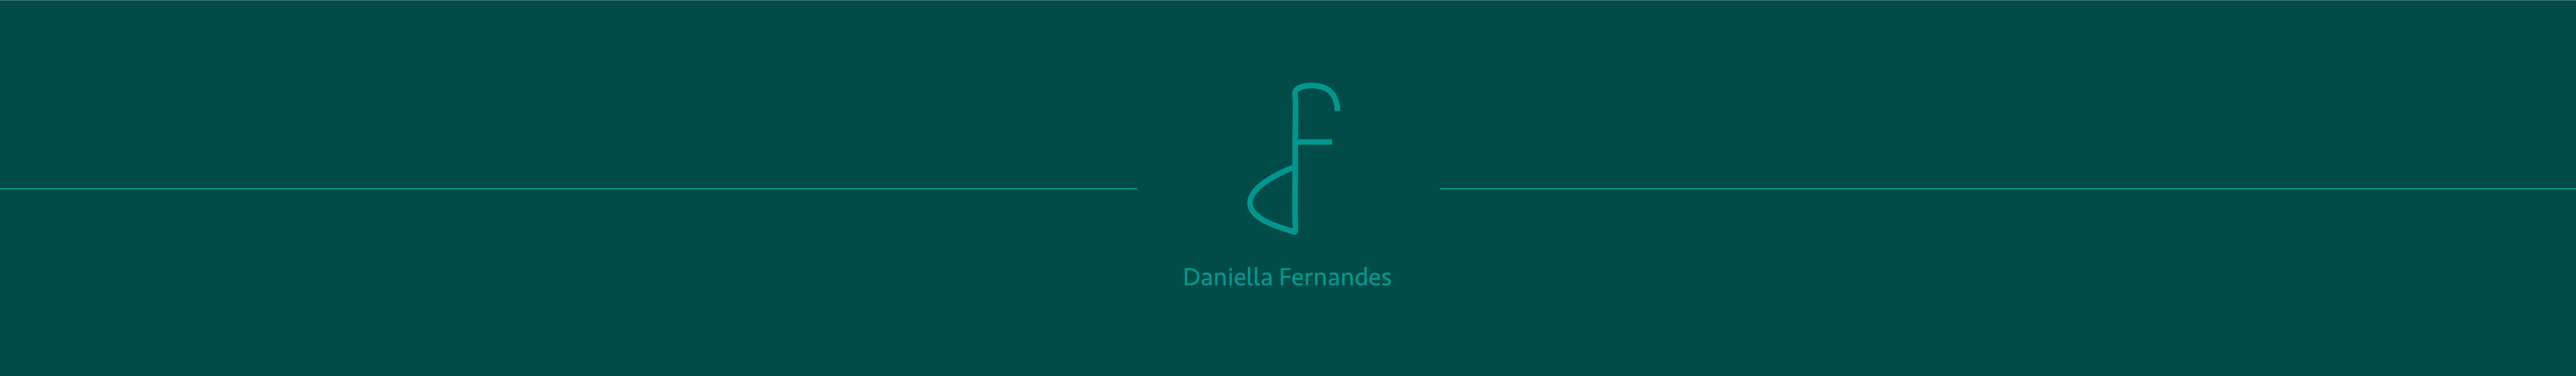 Daniella Fernandes's profile banner